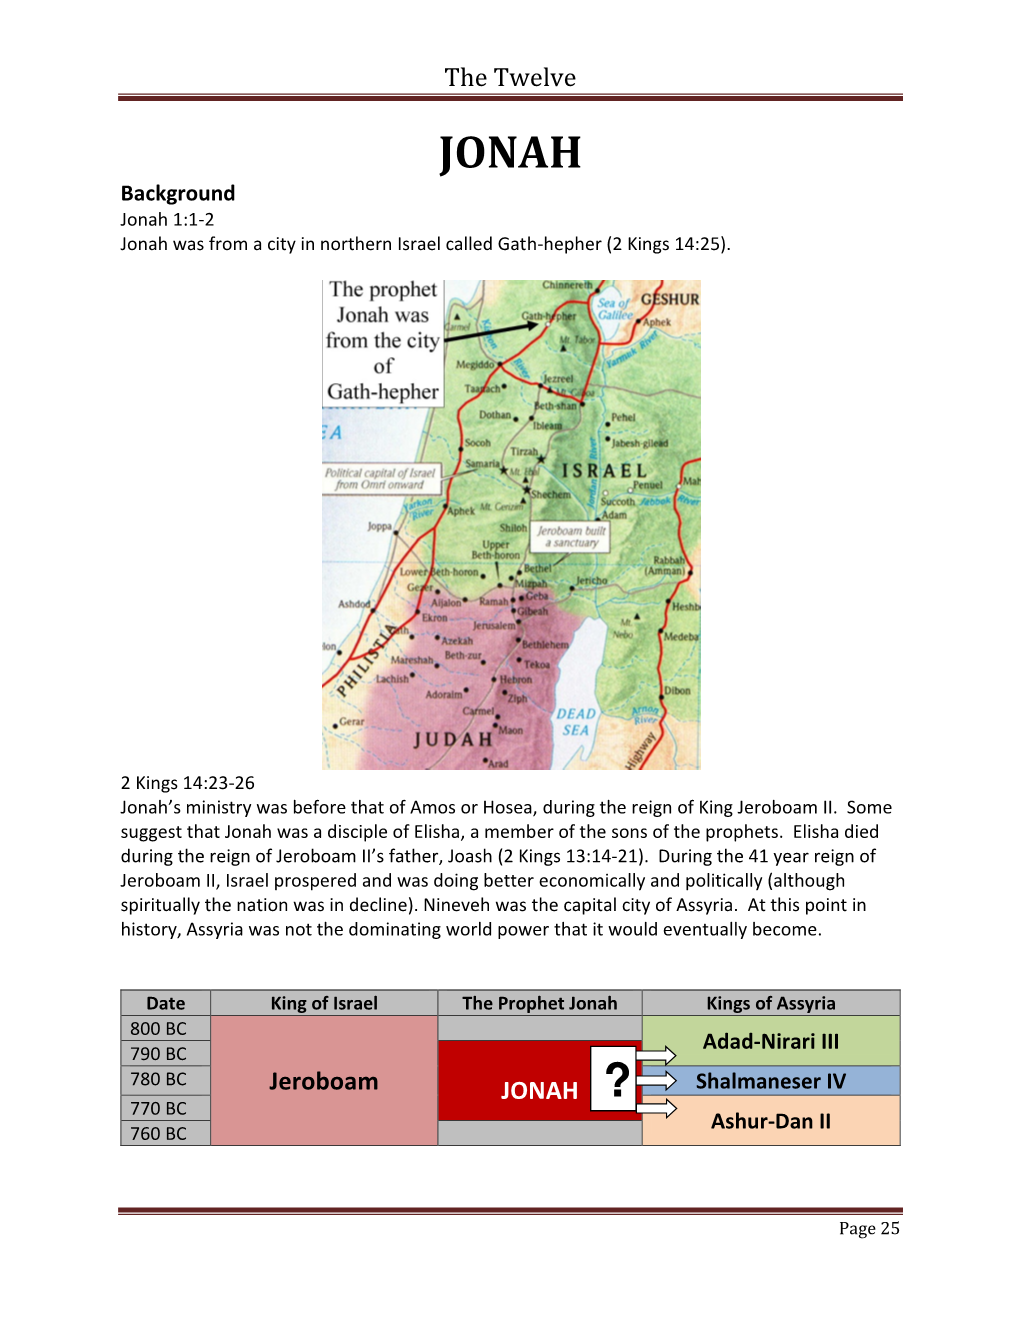 JONAH ? 770 BC Ashur-Dan II 760 BC